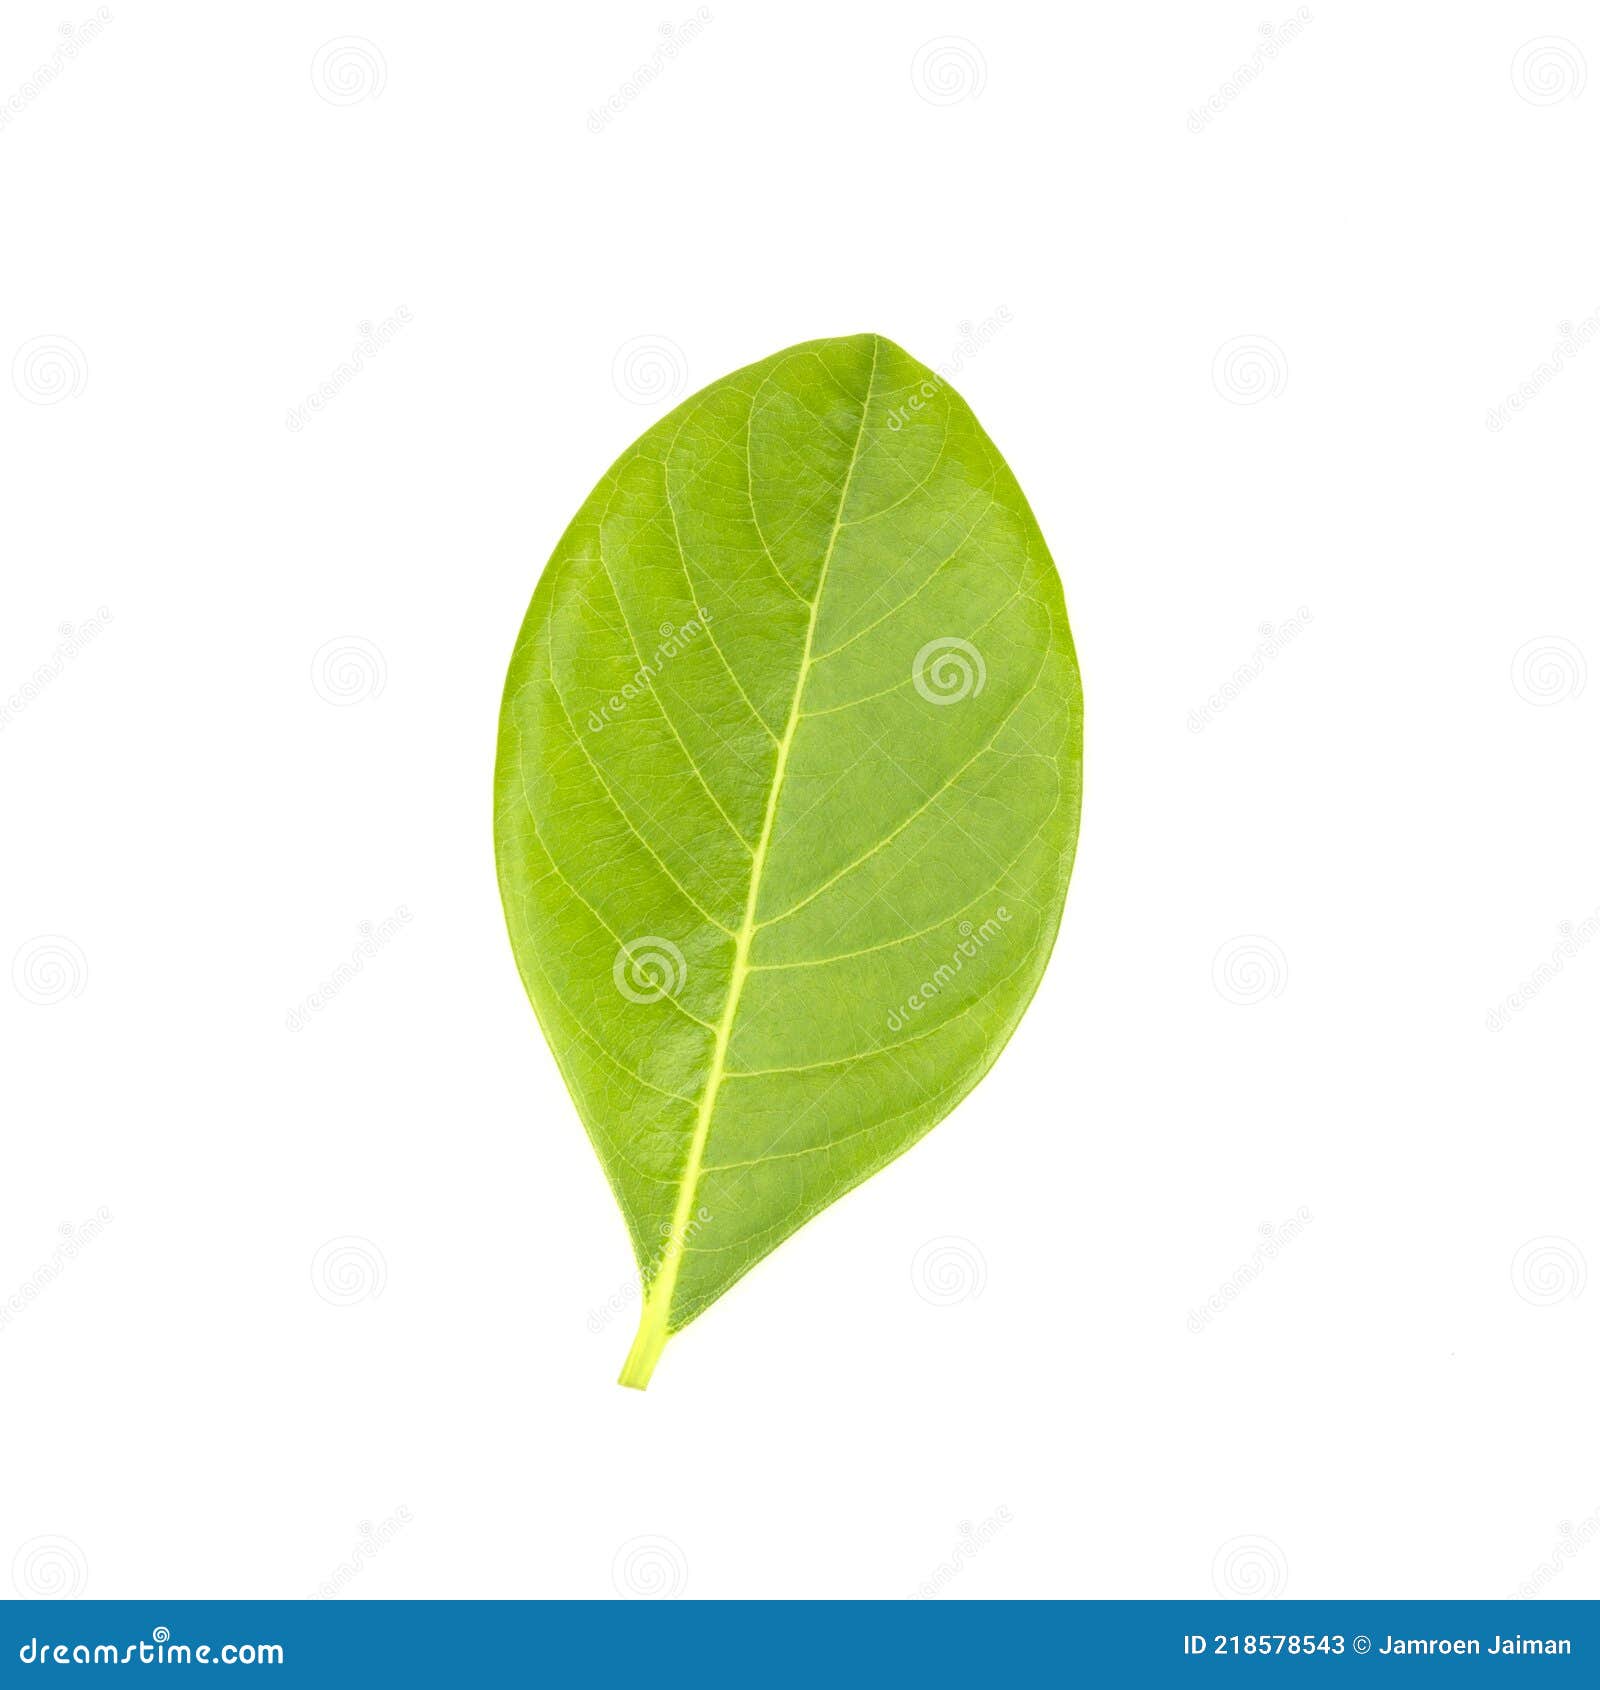 Leaves of Jackfruit Isolated on a White Background Stock Image - Image ...